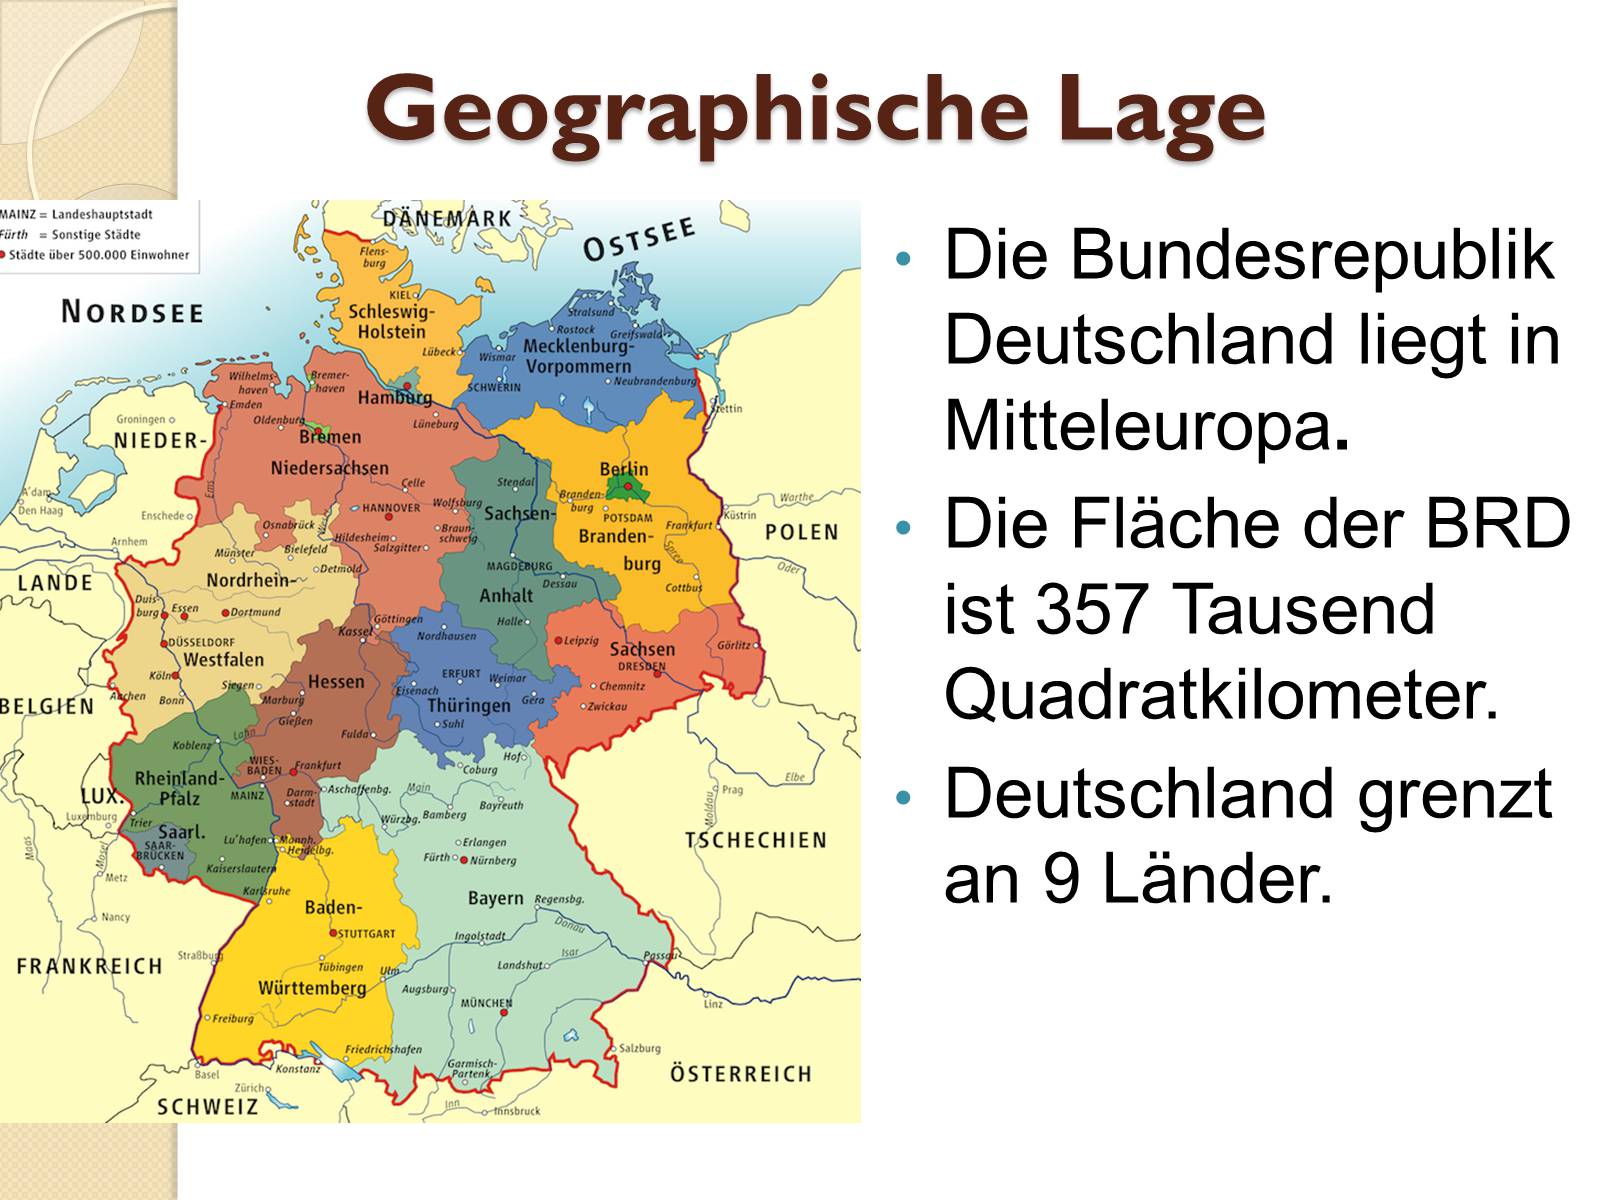 Deutschland grenzt an 9 Länder. 